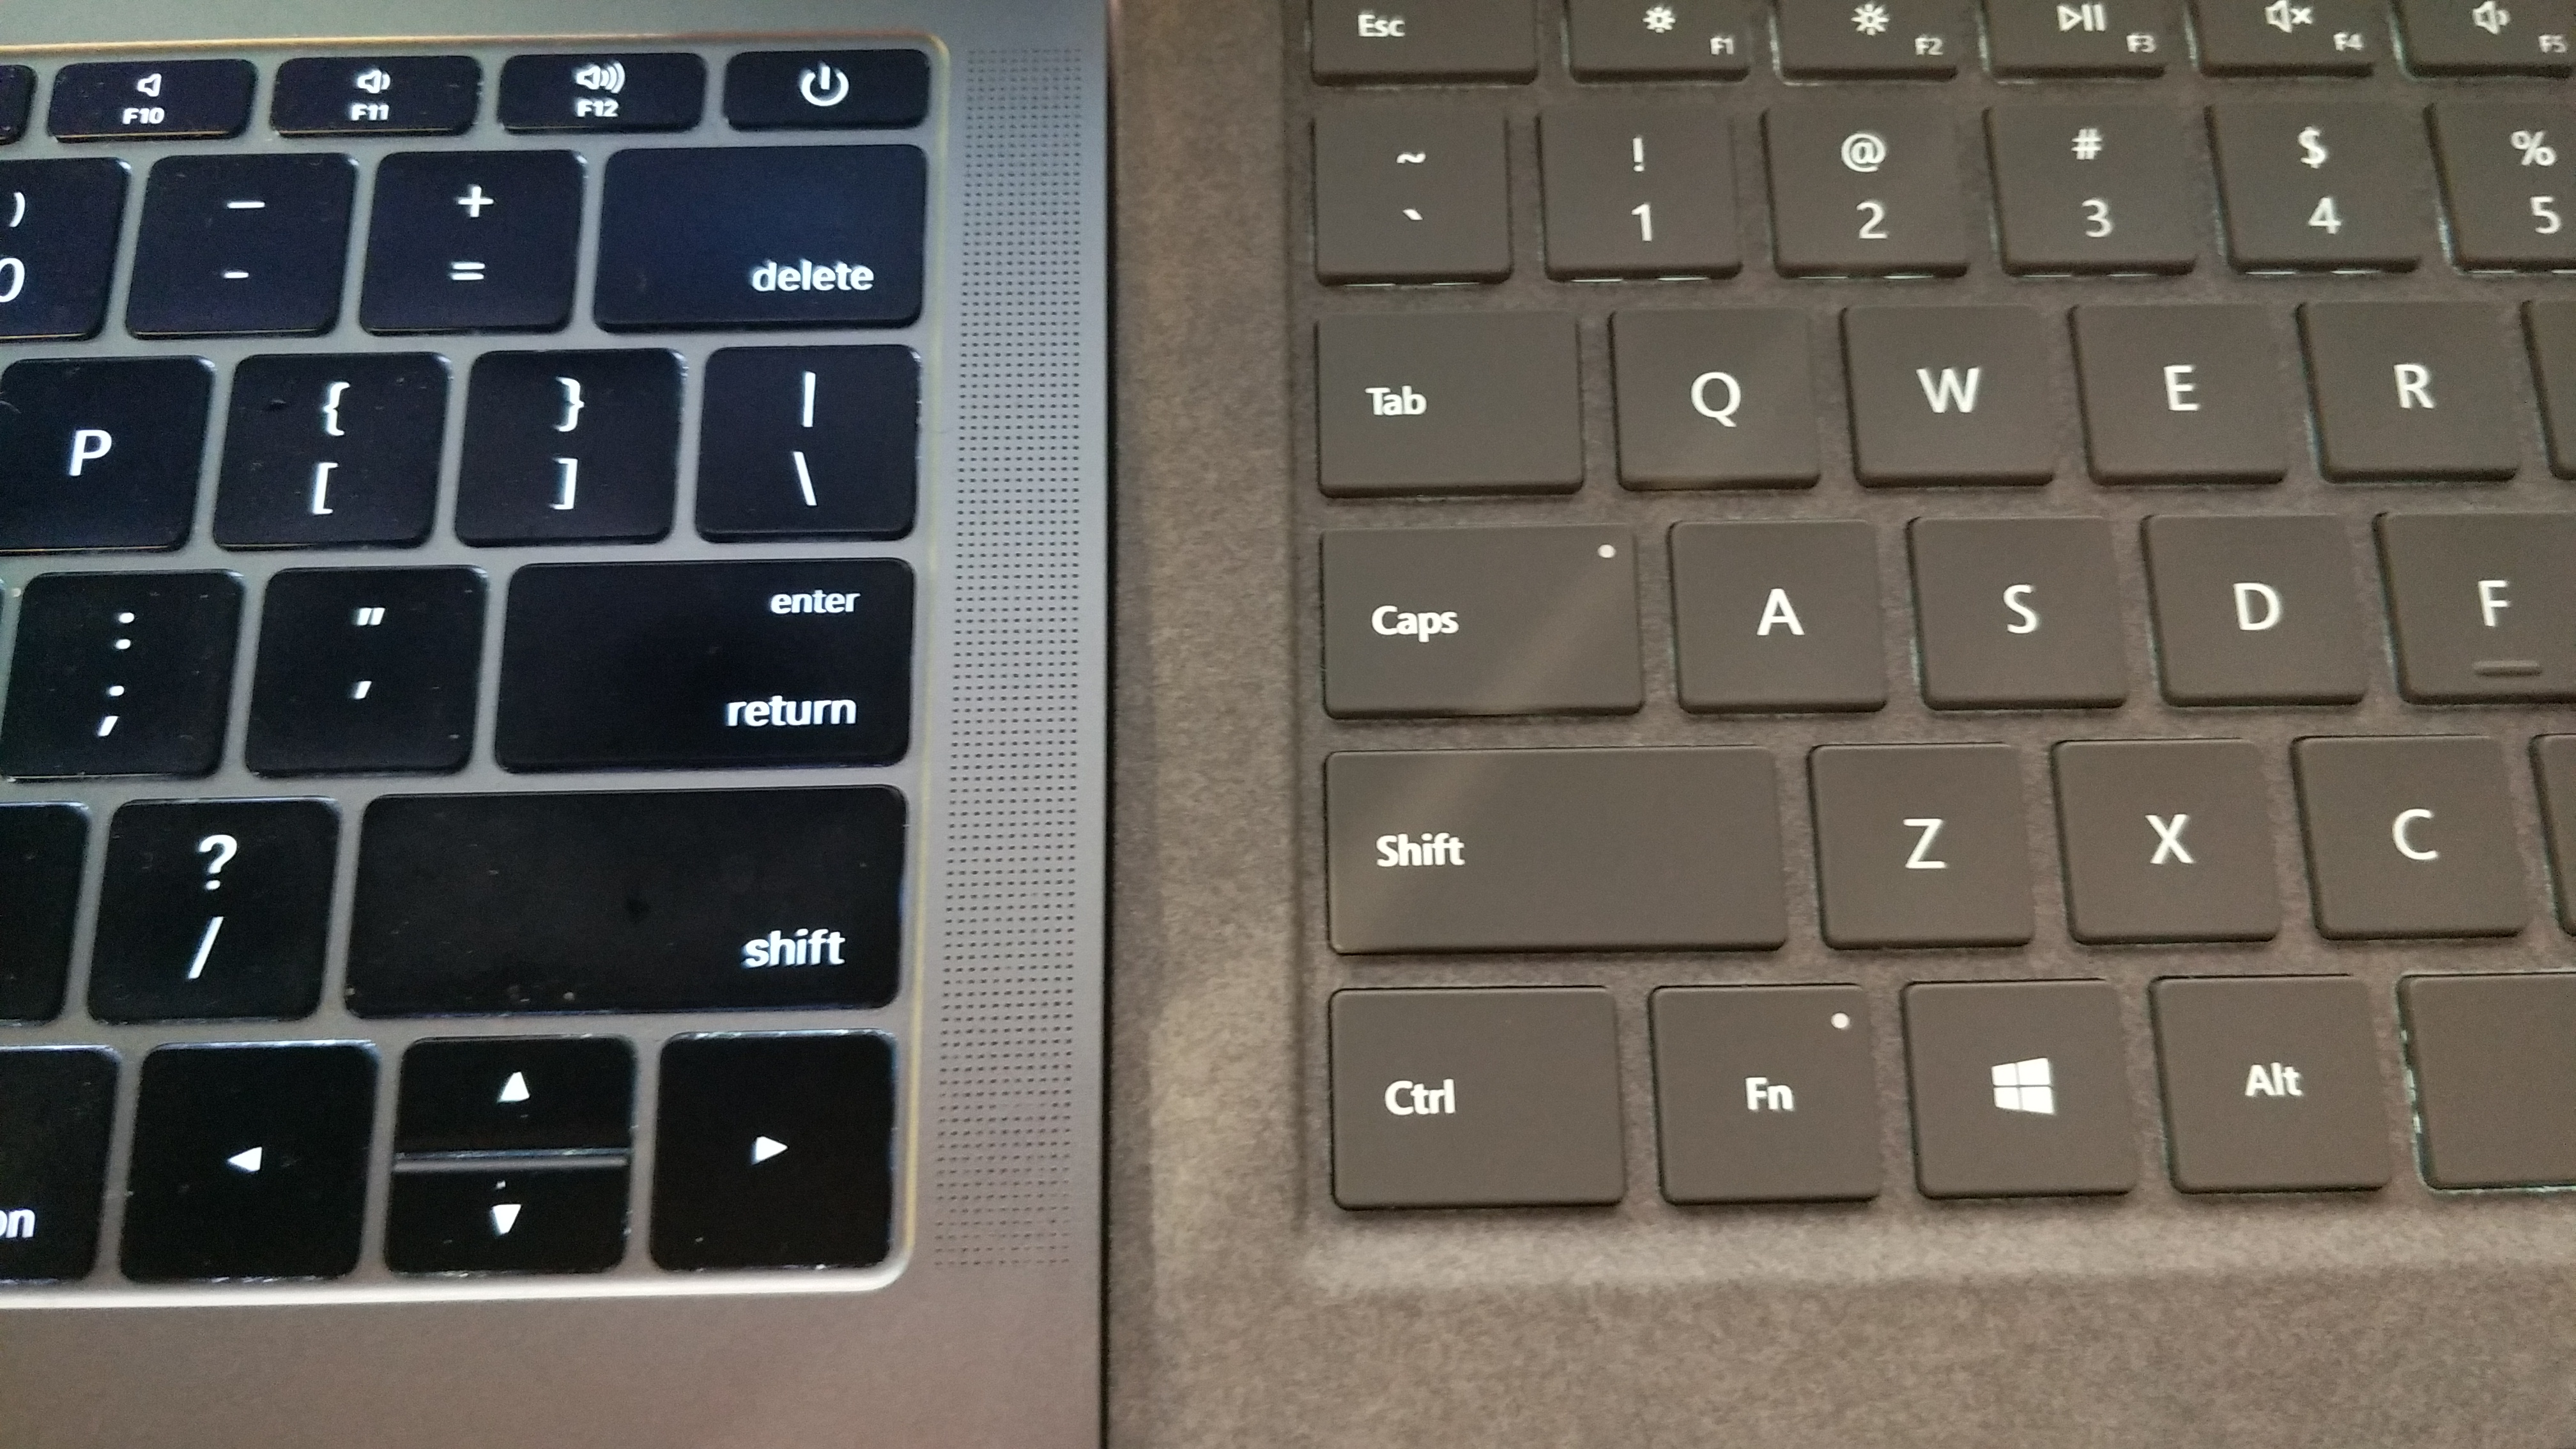 微软Laptop对比苹果新款MacBook，你会选择谁？